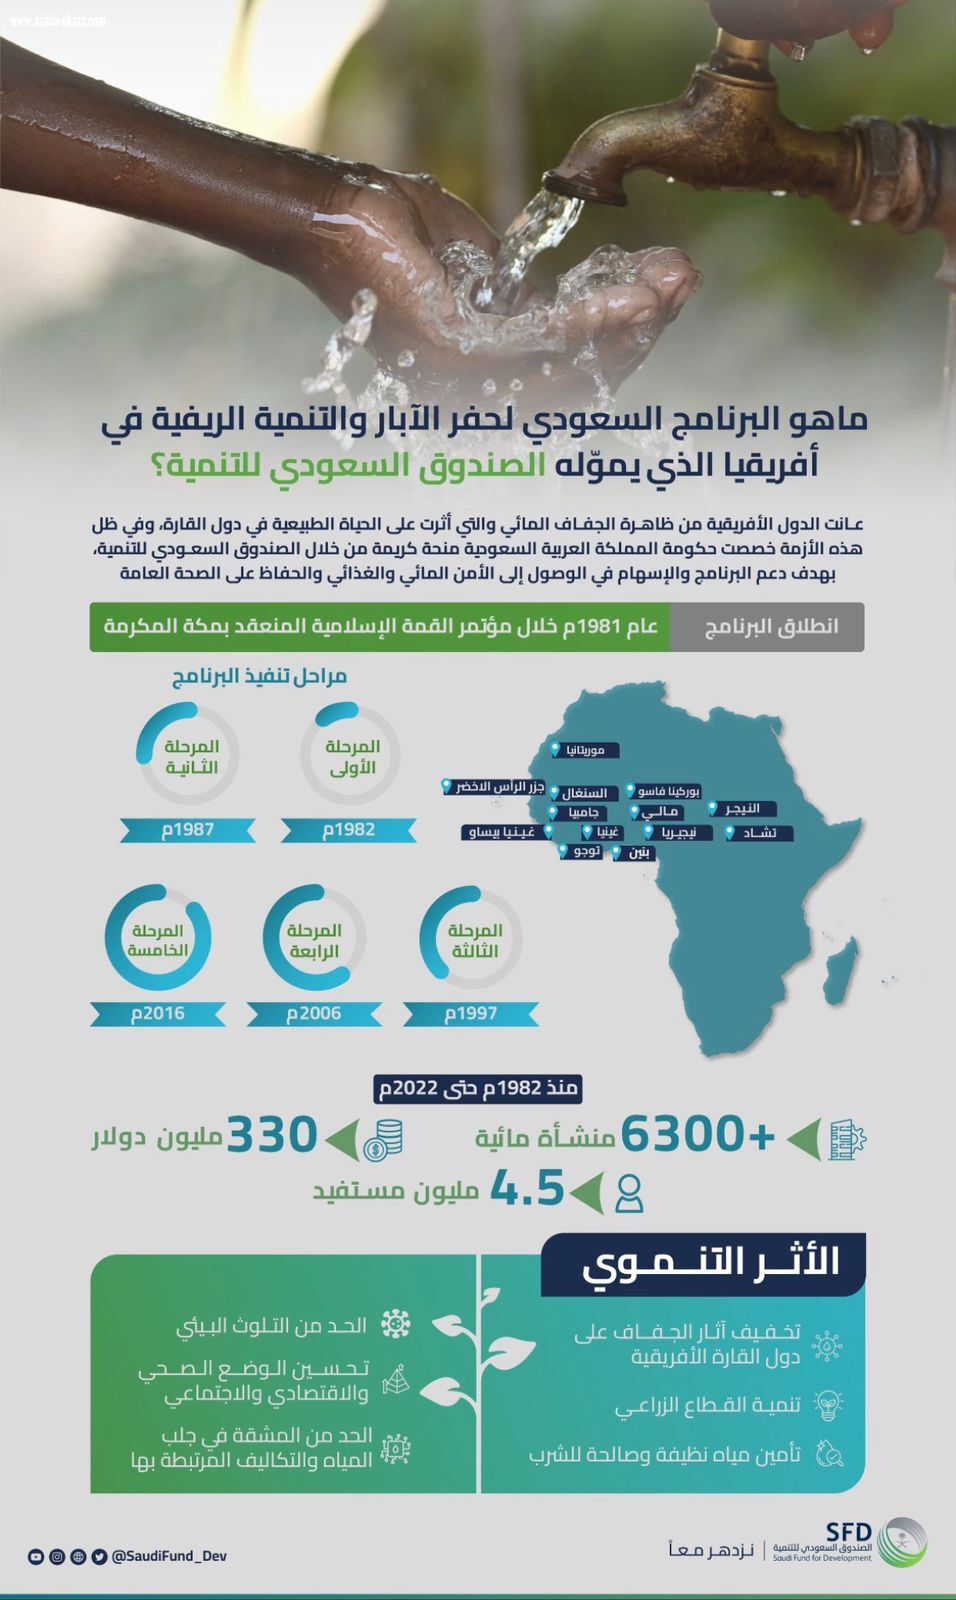 الصندوق السعودي للتنمية يُوقّع مذكرة تفاهم ضمن المرحلة الخامسة من البرنامج السعودي لحفر الآبار والتنمية الريفية في أفريقيا